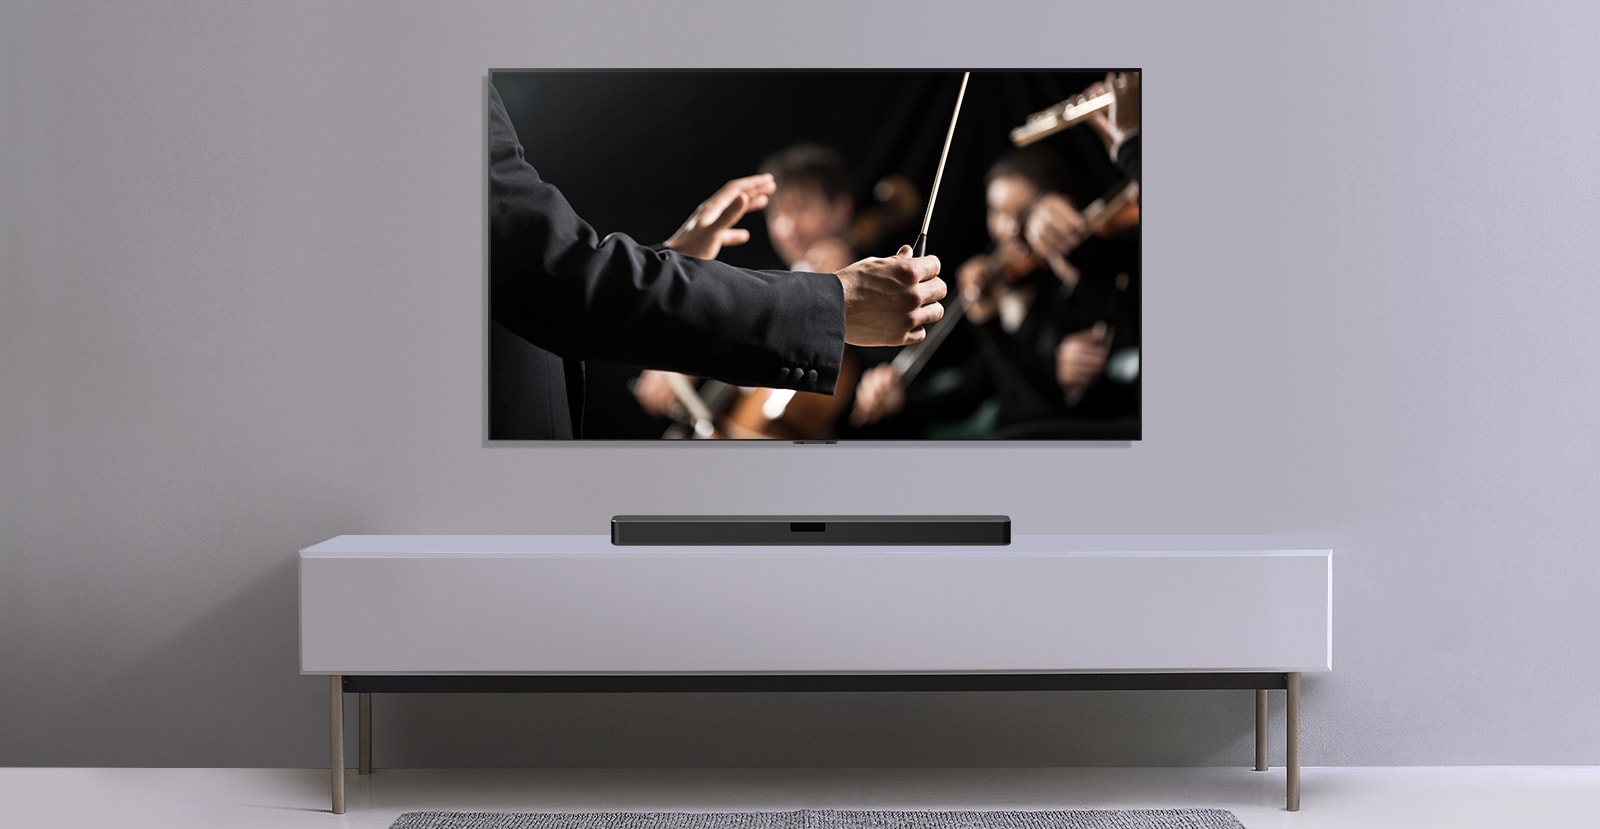 Harmaalla seinällä on televisio ja sen alla harmaalla tasolla on LG-soundbar-kaiutin. Televisiossa kapellimestari johtaa orkesteria. 